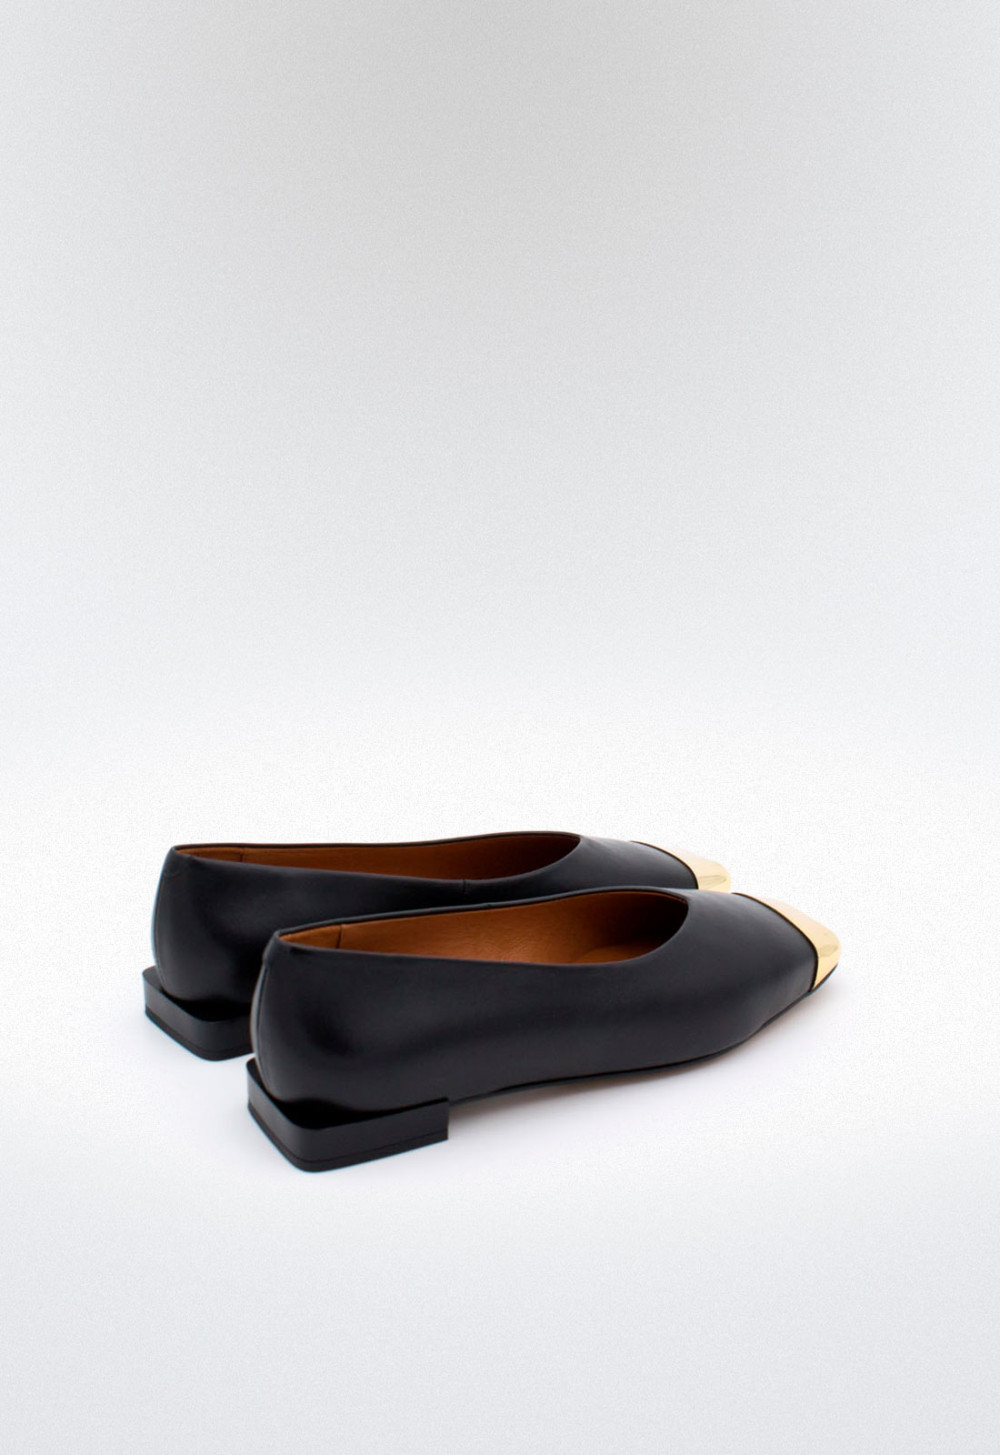 Manoletina De Ante Con Cuña Para Mujer Negro — Zapatos Calzados Germans